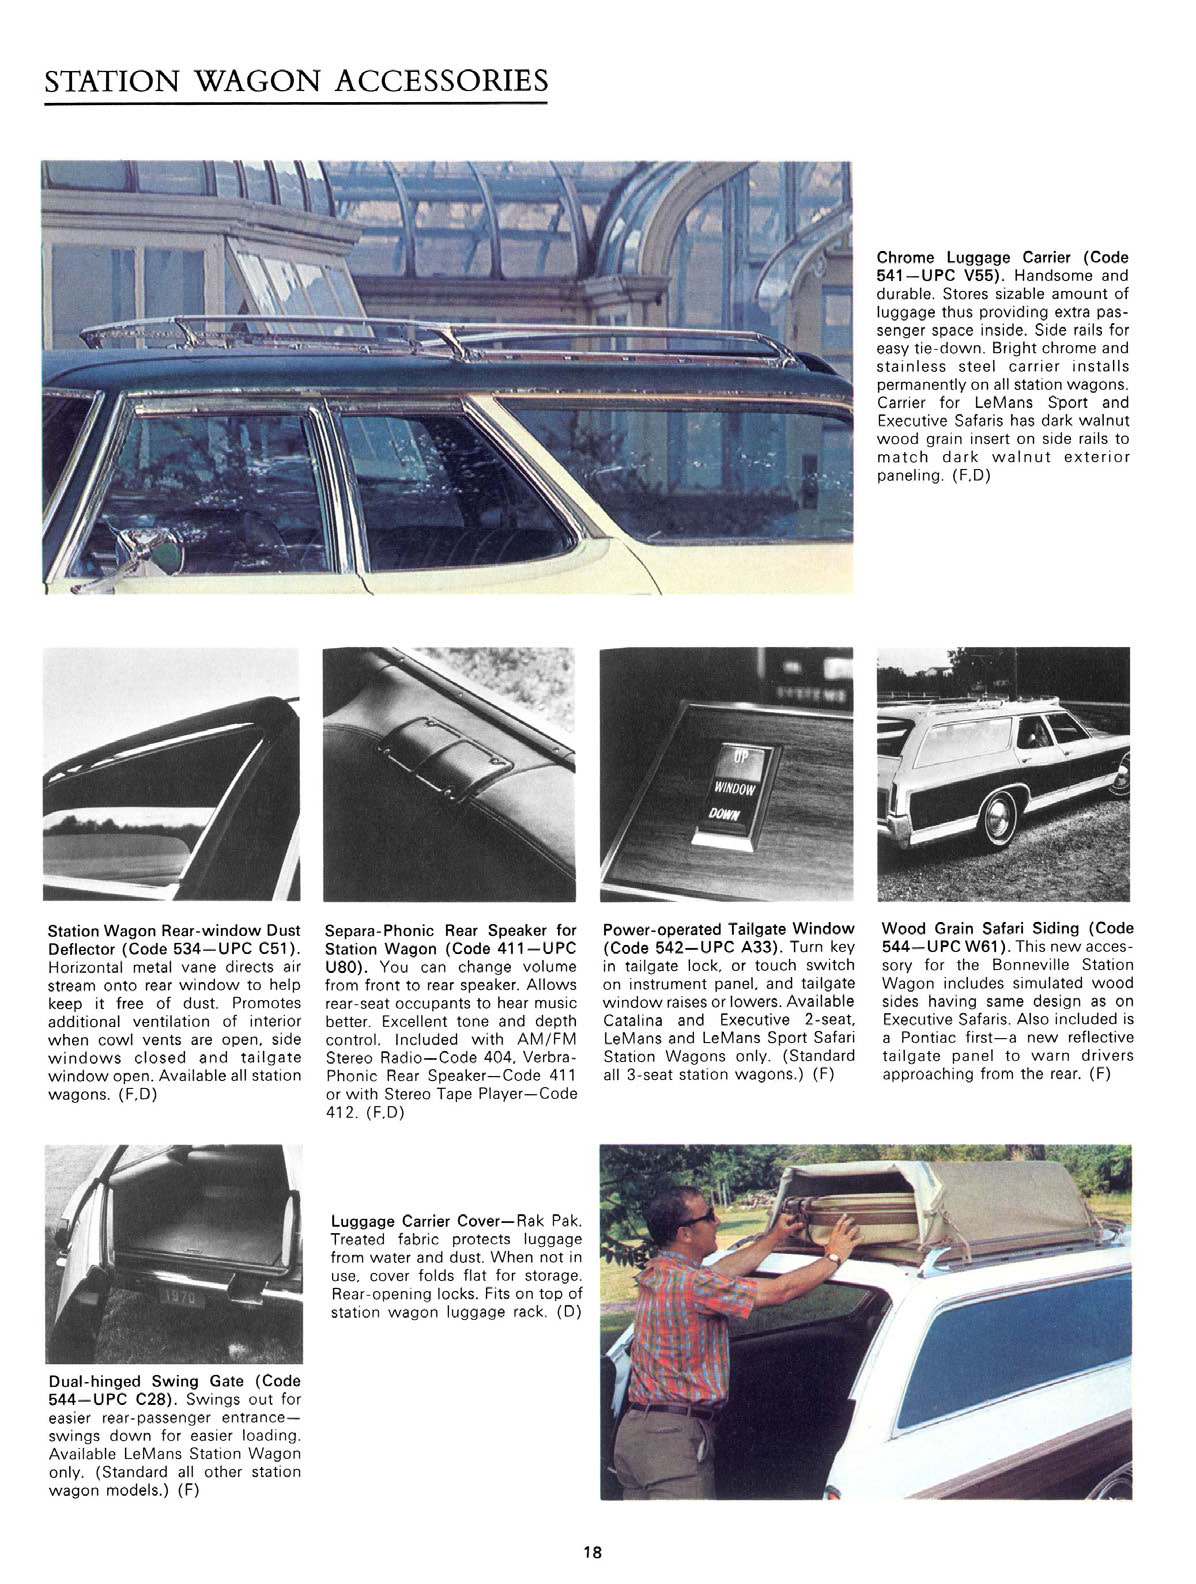 n_1970 Pontiac Accessories-18.jpg